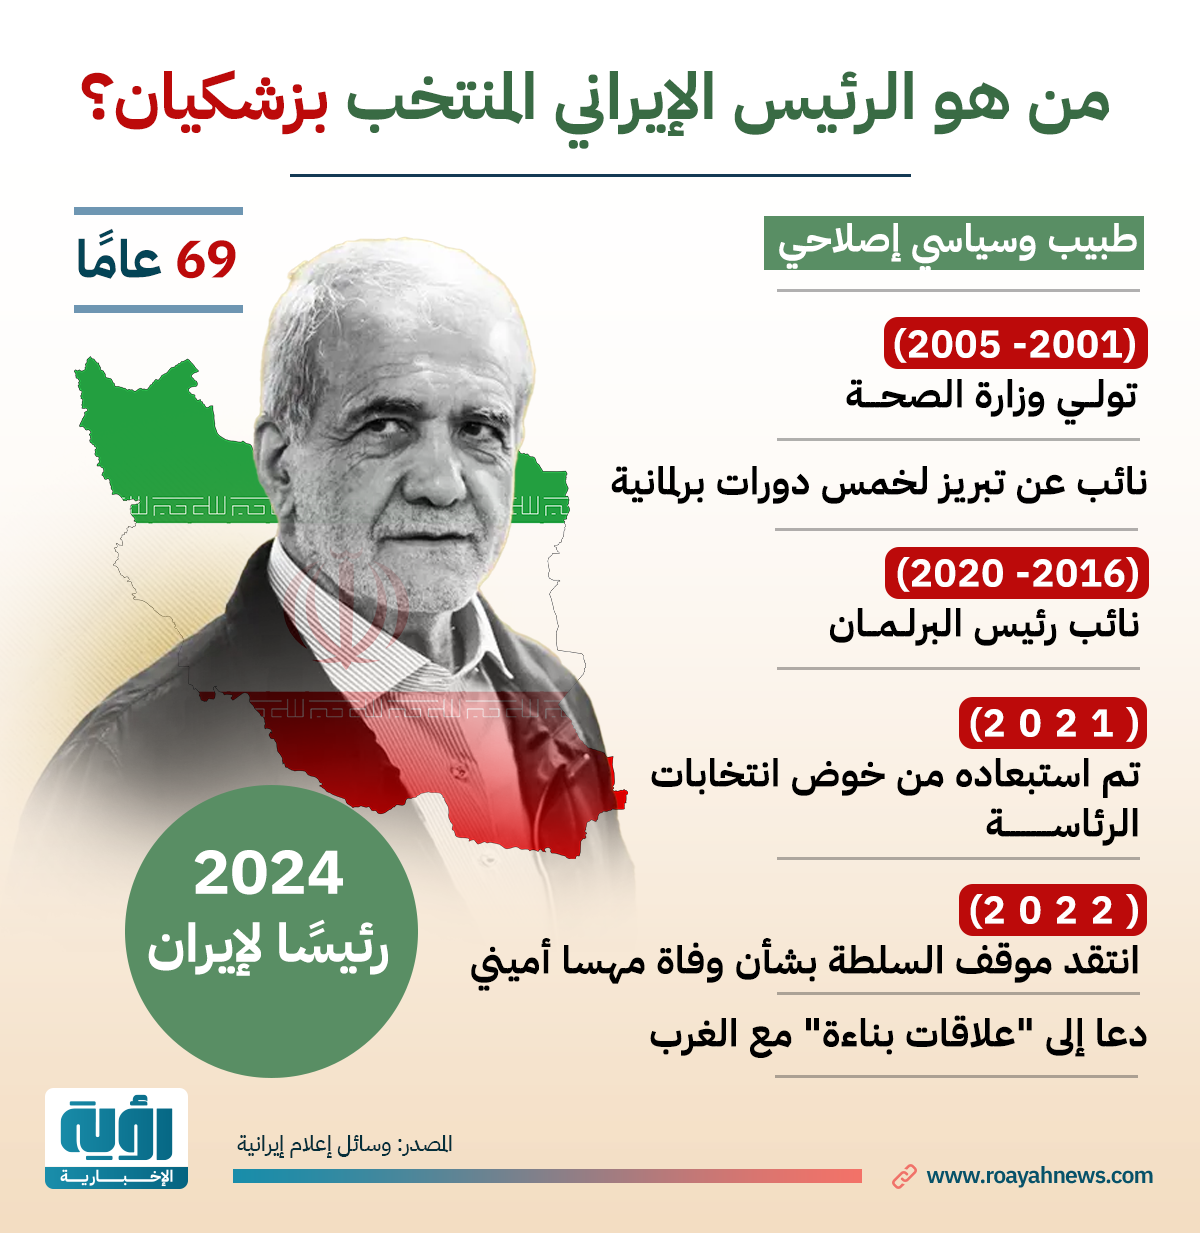 الرئيس الإيراني المنتخب بزشكيان